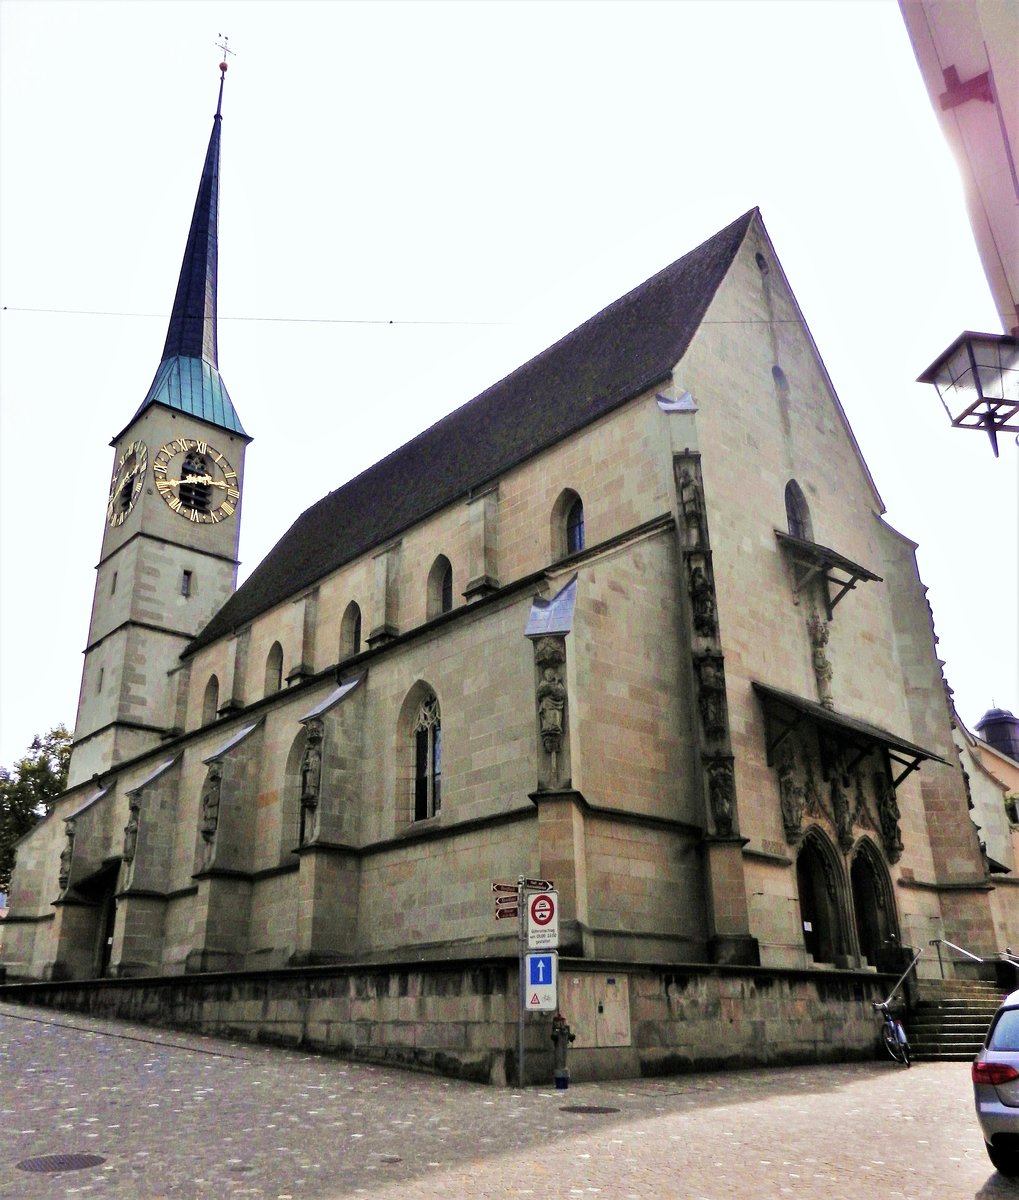 Zug, katholische Kirche St. Oswald, mit Doppelportal an der Hauptfassade. Die Kirche ist einer der bedeutendsten sptgotischen Bauten der Zentralschweiz - 18.09.2012